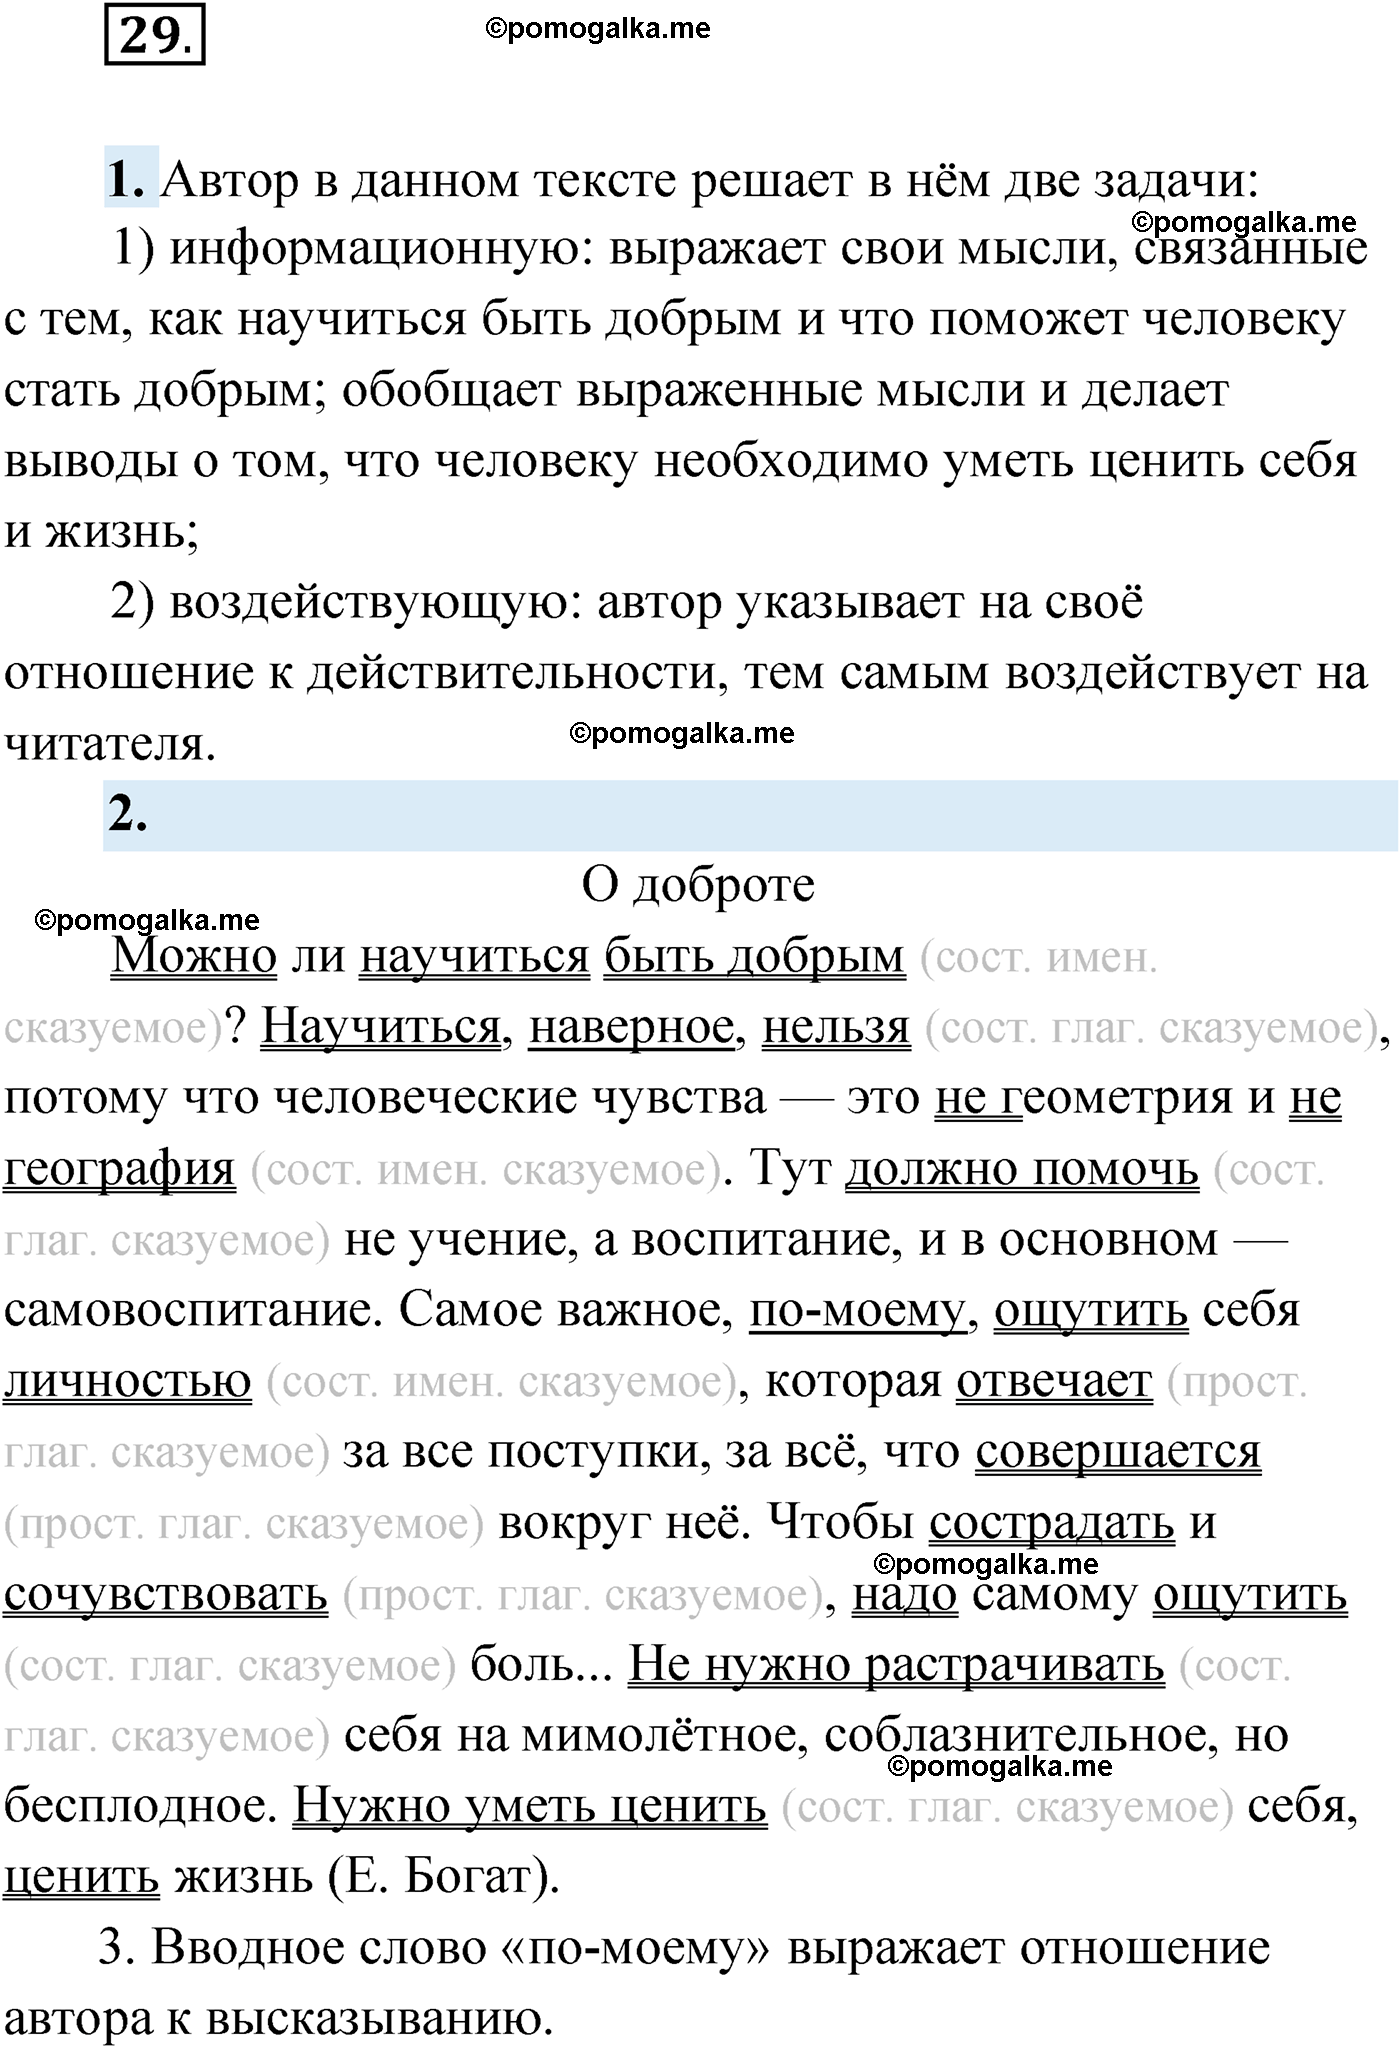 упражнение №29 русский язык 9 класс Мурина 2019 год